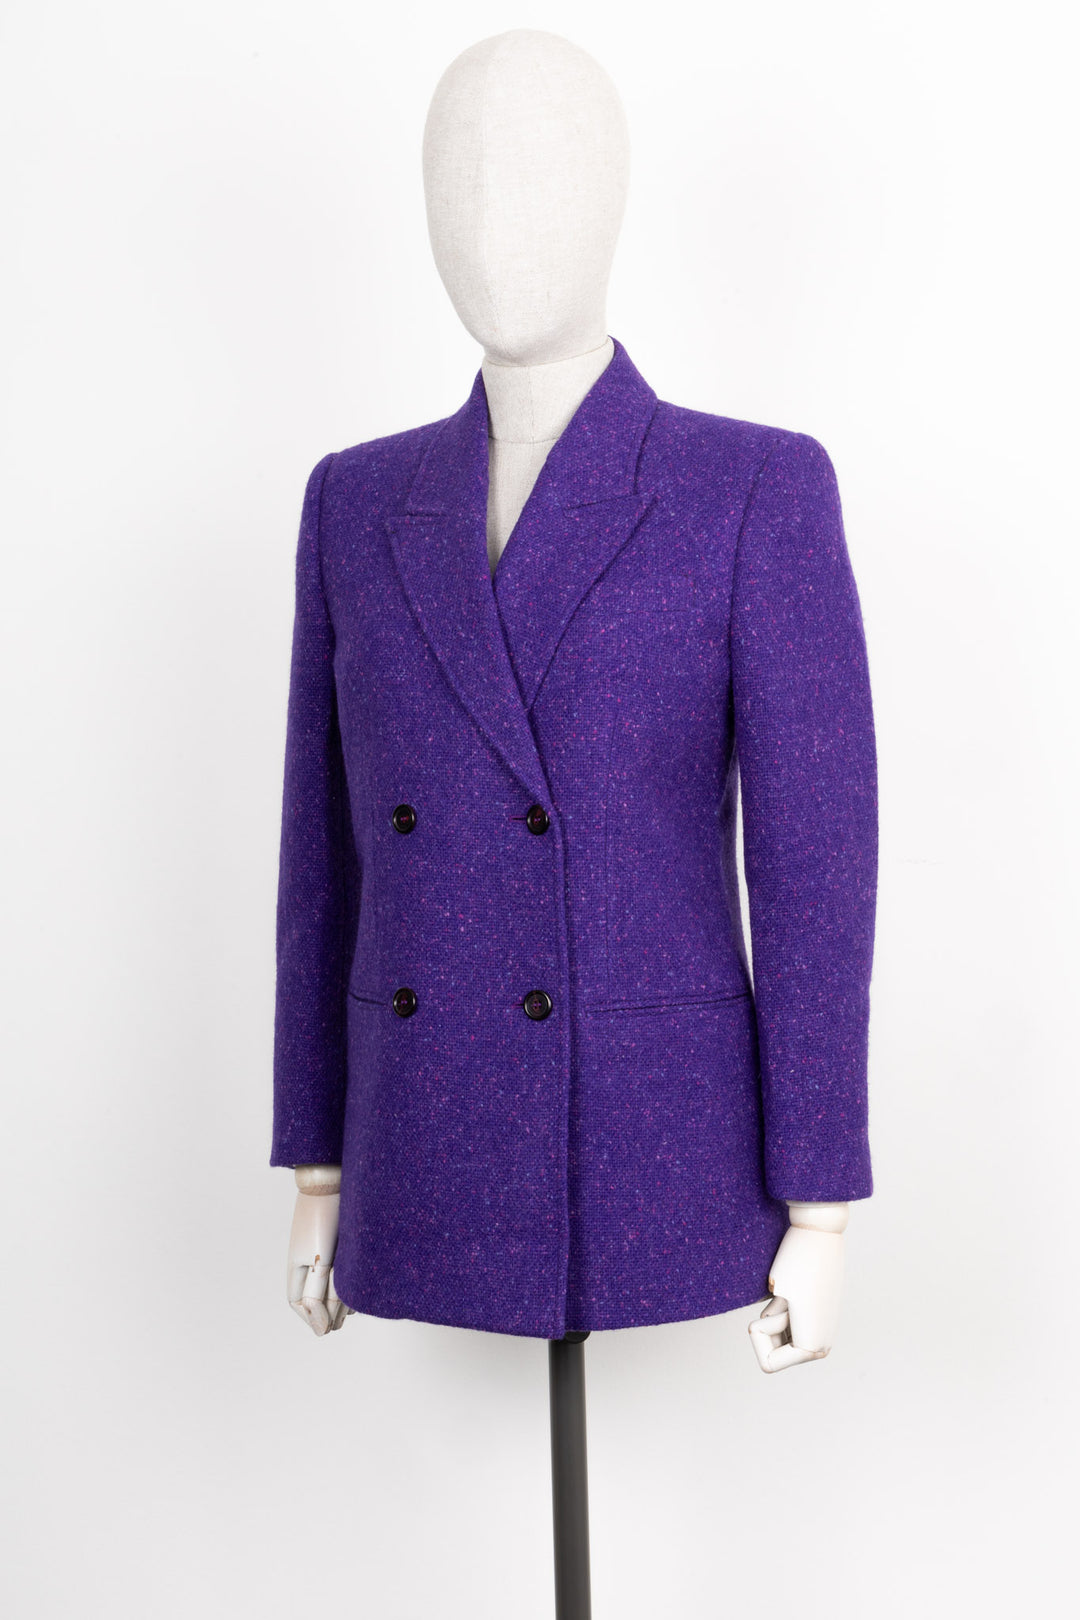 SAINT LAURENT 2020 Tweed Jacket Purple